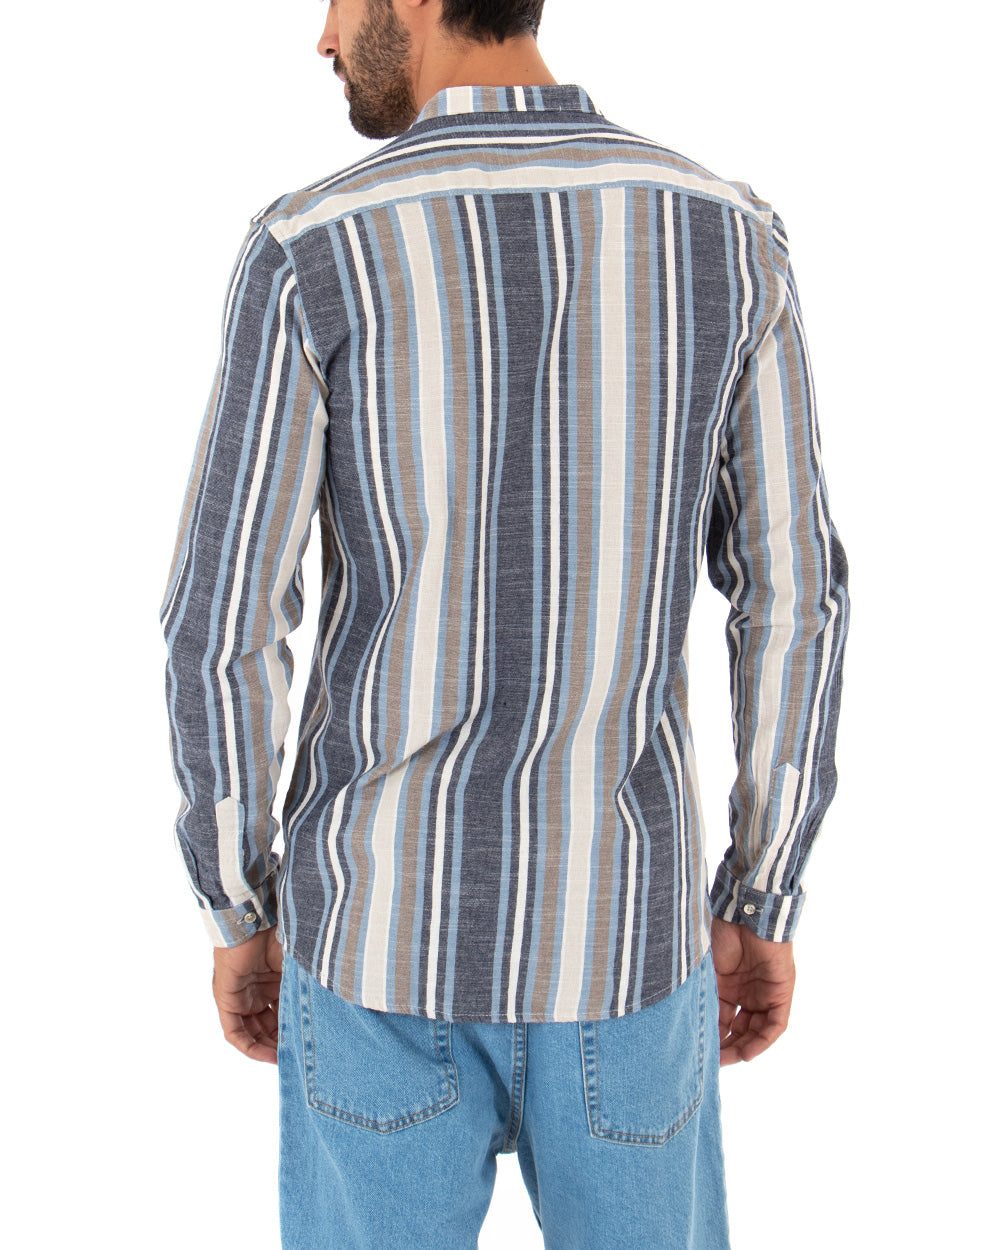 Camicia Uomo Collo Coreano Manica Lunga Lino Rigata Blu Sartoriale GIOSAL-C2342A